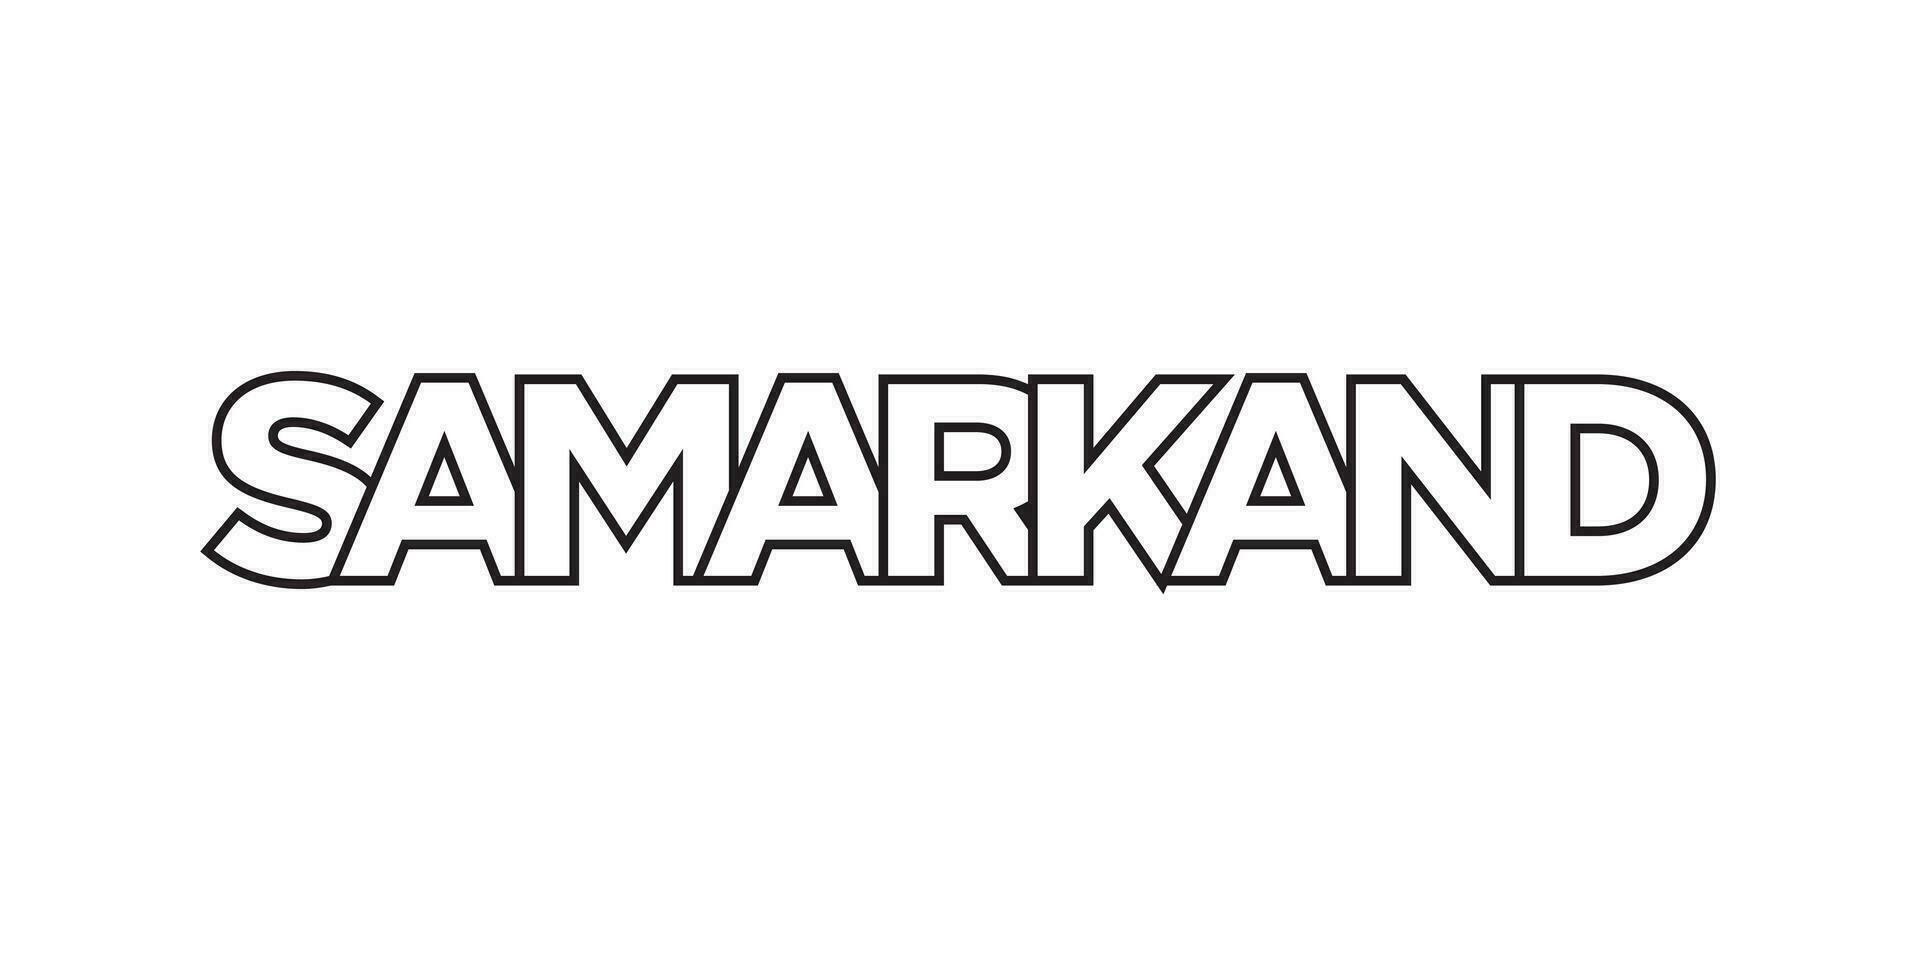 Samarcande dans le Ouzbékistan emblème. le conception Caractéristiques une géométrique style, vecteur illustration avec audacieux typographie dans une moderne Police de caractère. le graphique slogan caractères.